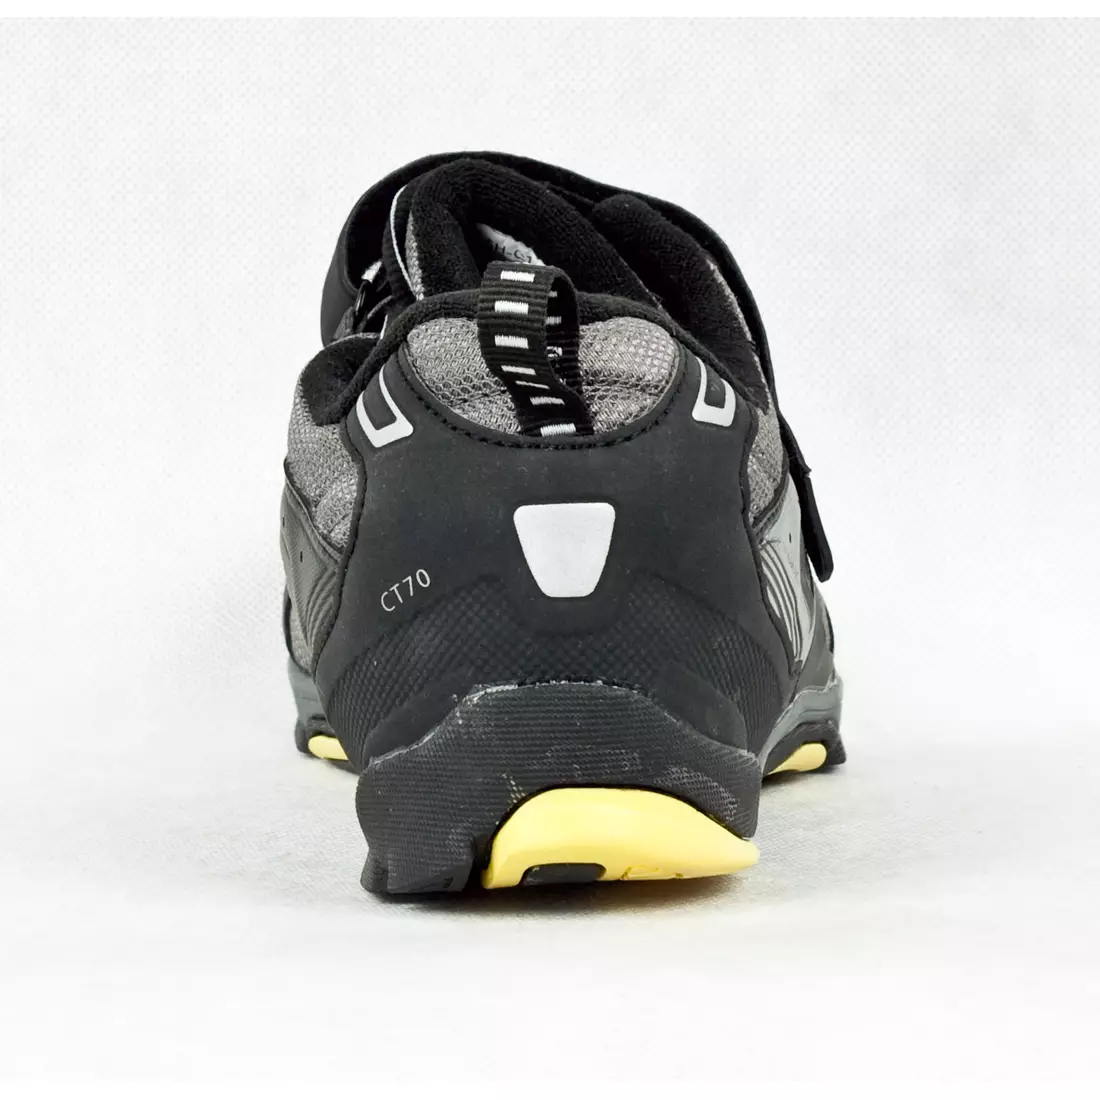 SHIMANO SH-CT70 - rekreačná cyklistická obuv so systémom CLICK'R